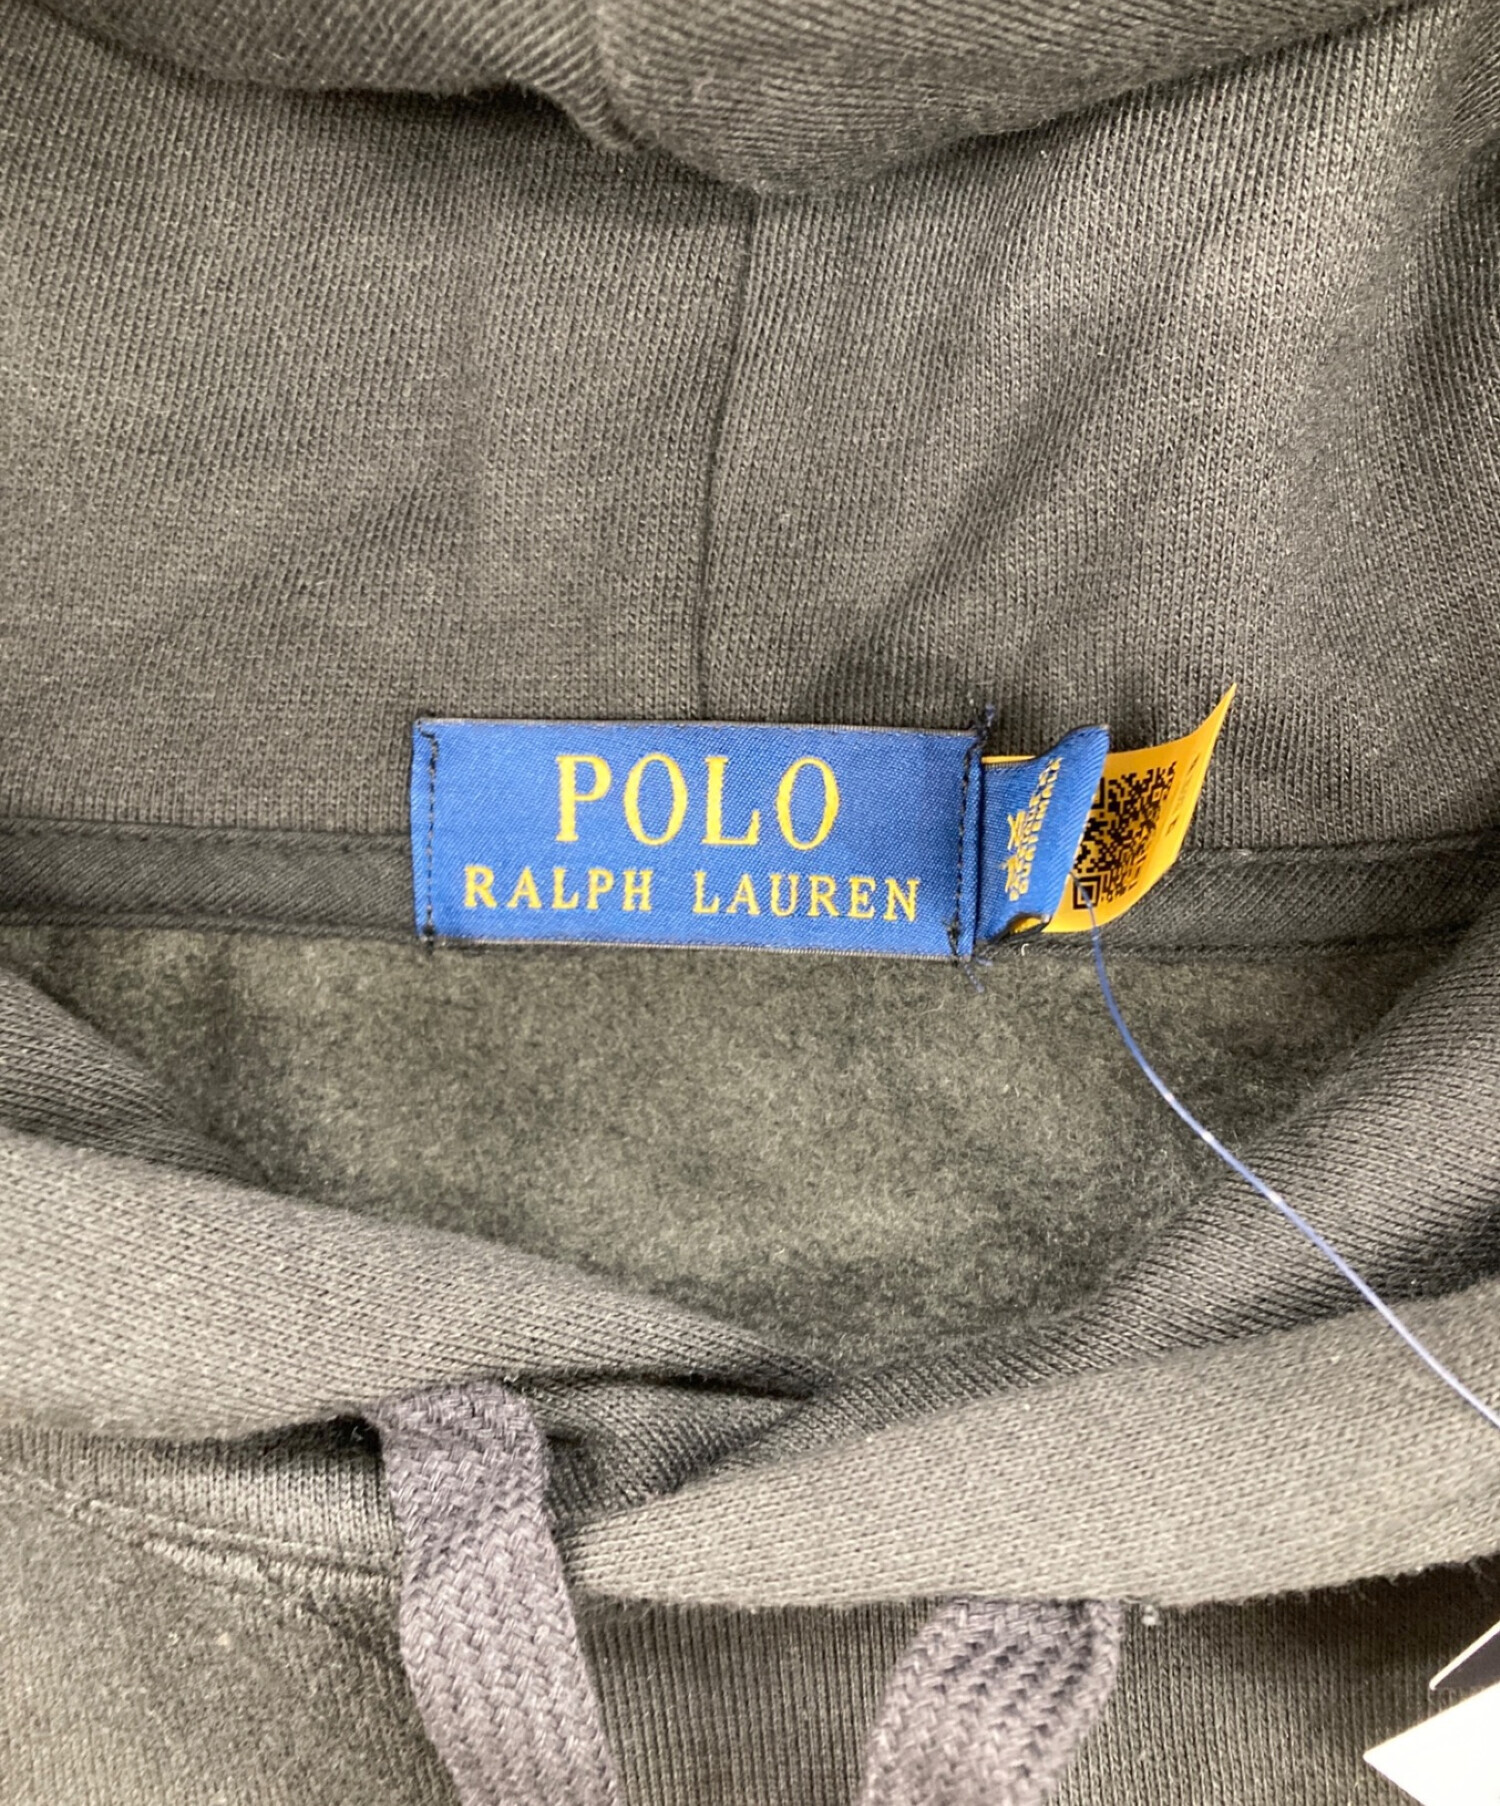 POLO RALPH LAUREN (ポロ・ラルフローレン) Fortnite (フォートナイト) 刺繍パーカー ブラック サイズ:XL 未使用品